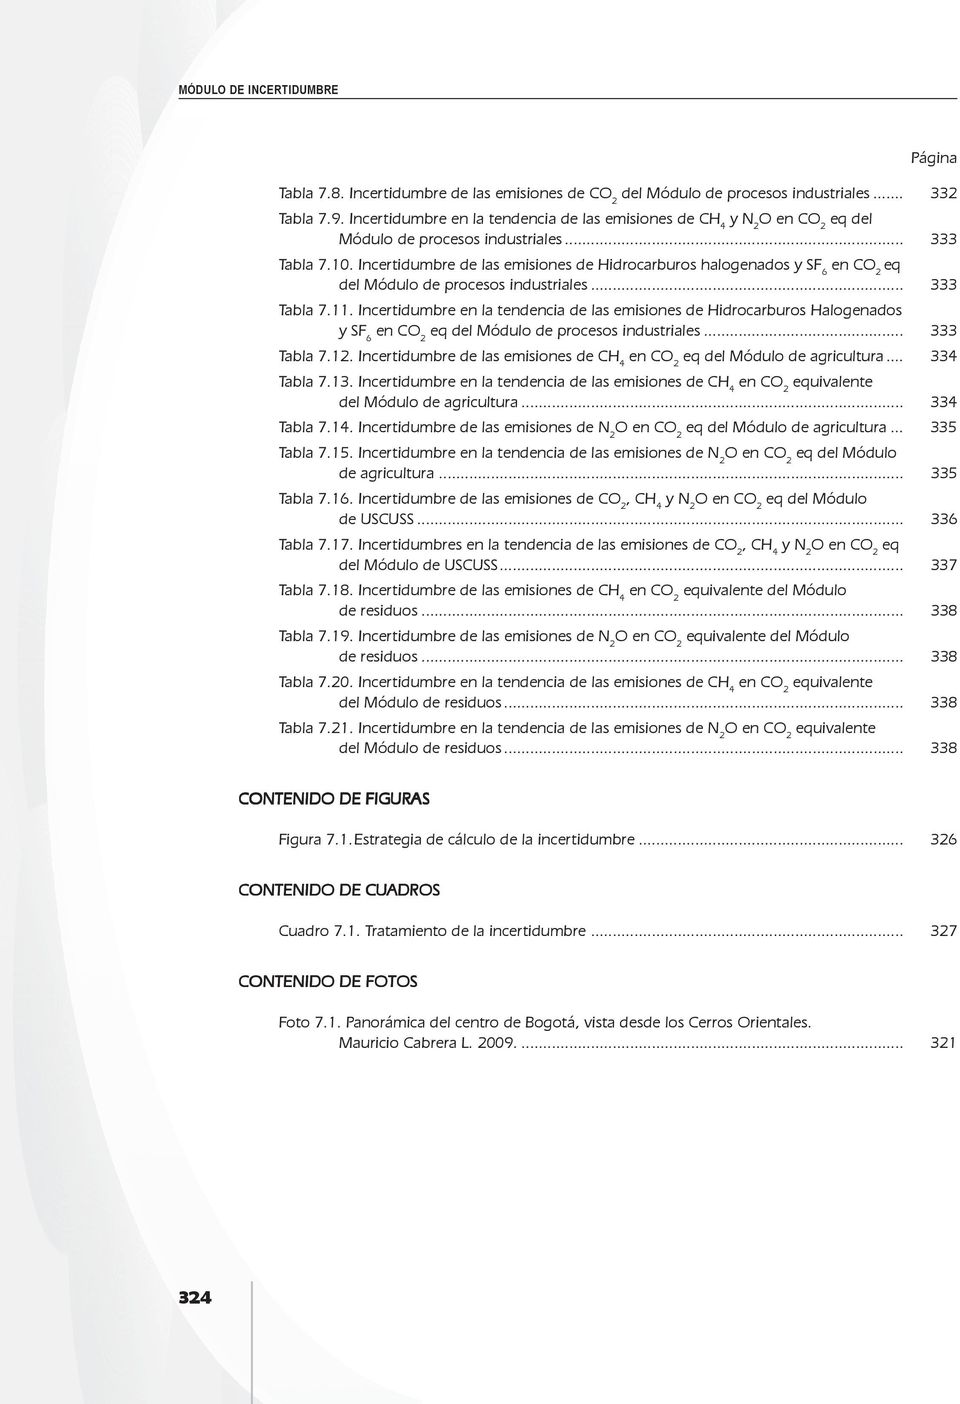 Incertidumbre de las emisiones de Hidrocarburos halogenados y SF 6 eq del Módulo de procesos industriales... 333 Tabla 7.11.